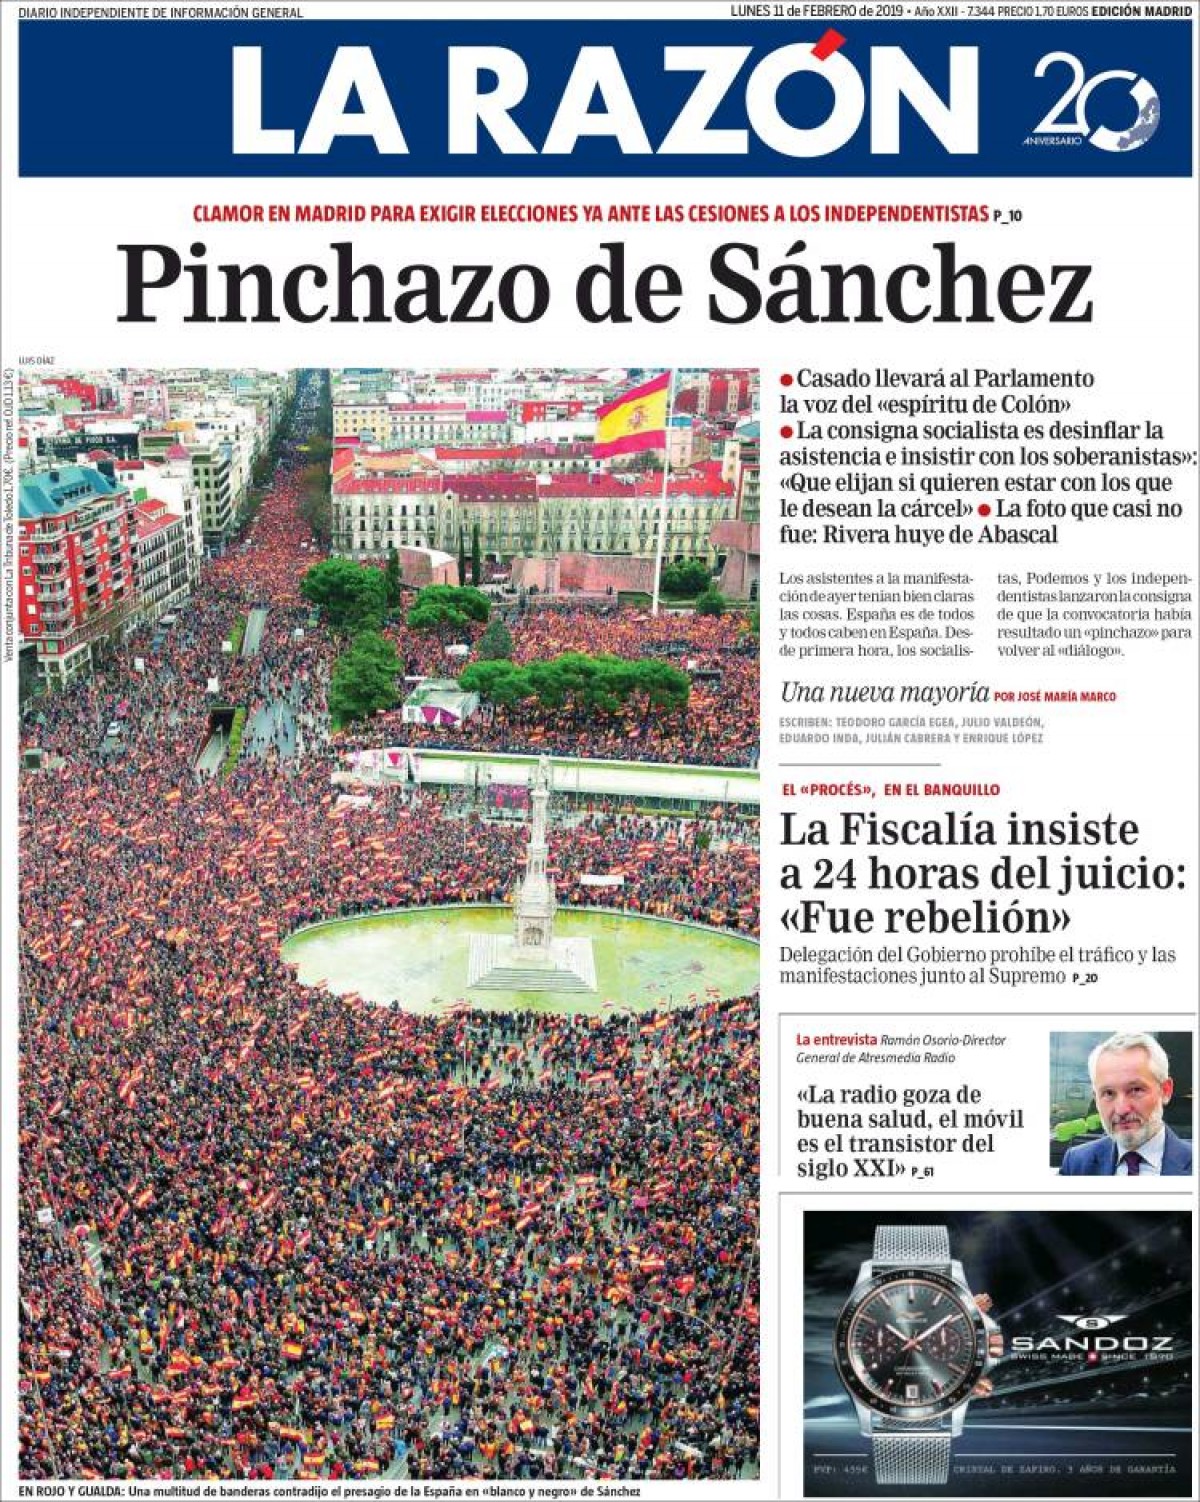 La presse espagnole minimise le lamentable l'échec de la manifestation de la droite et de l'extrême droite